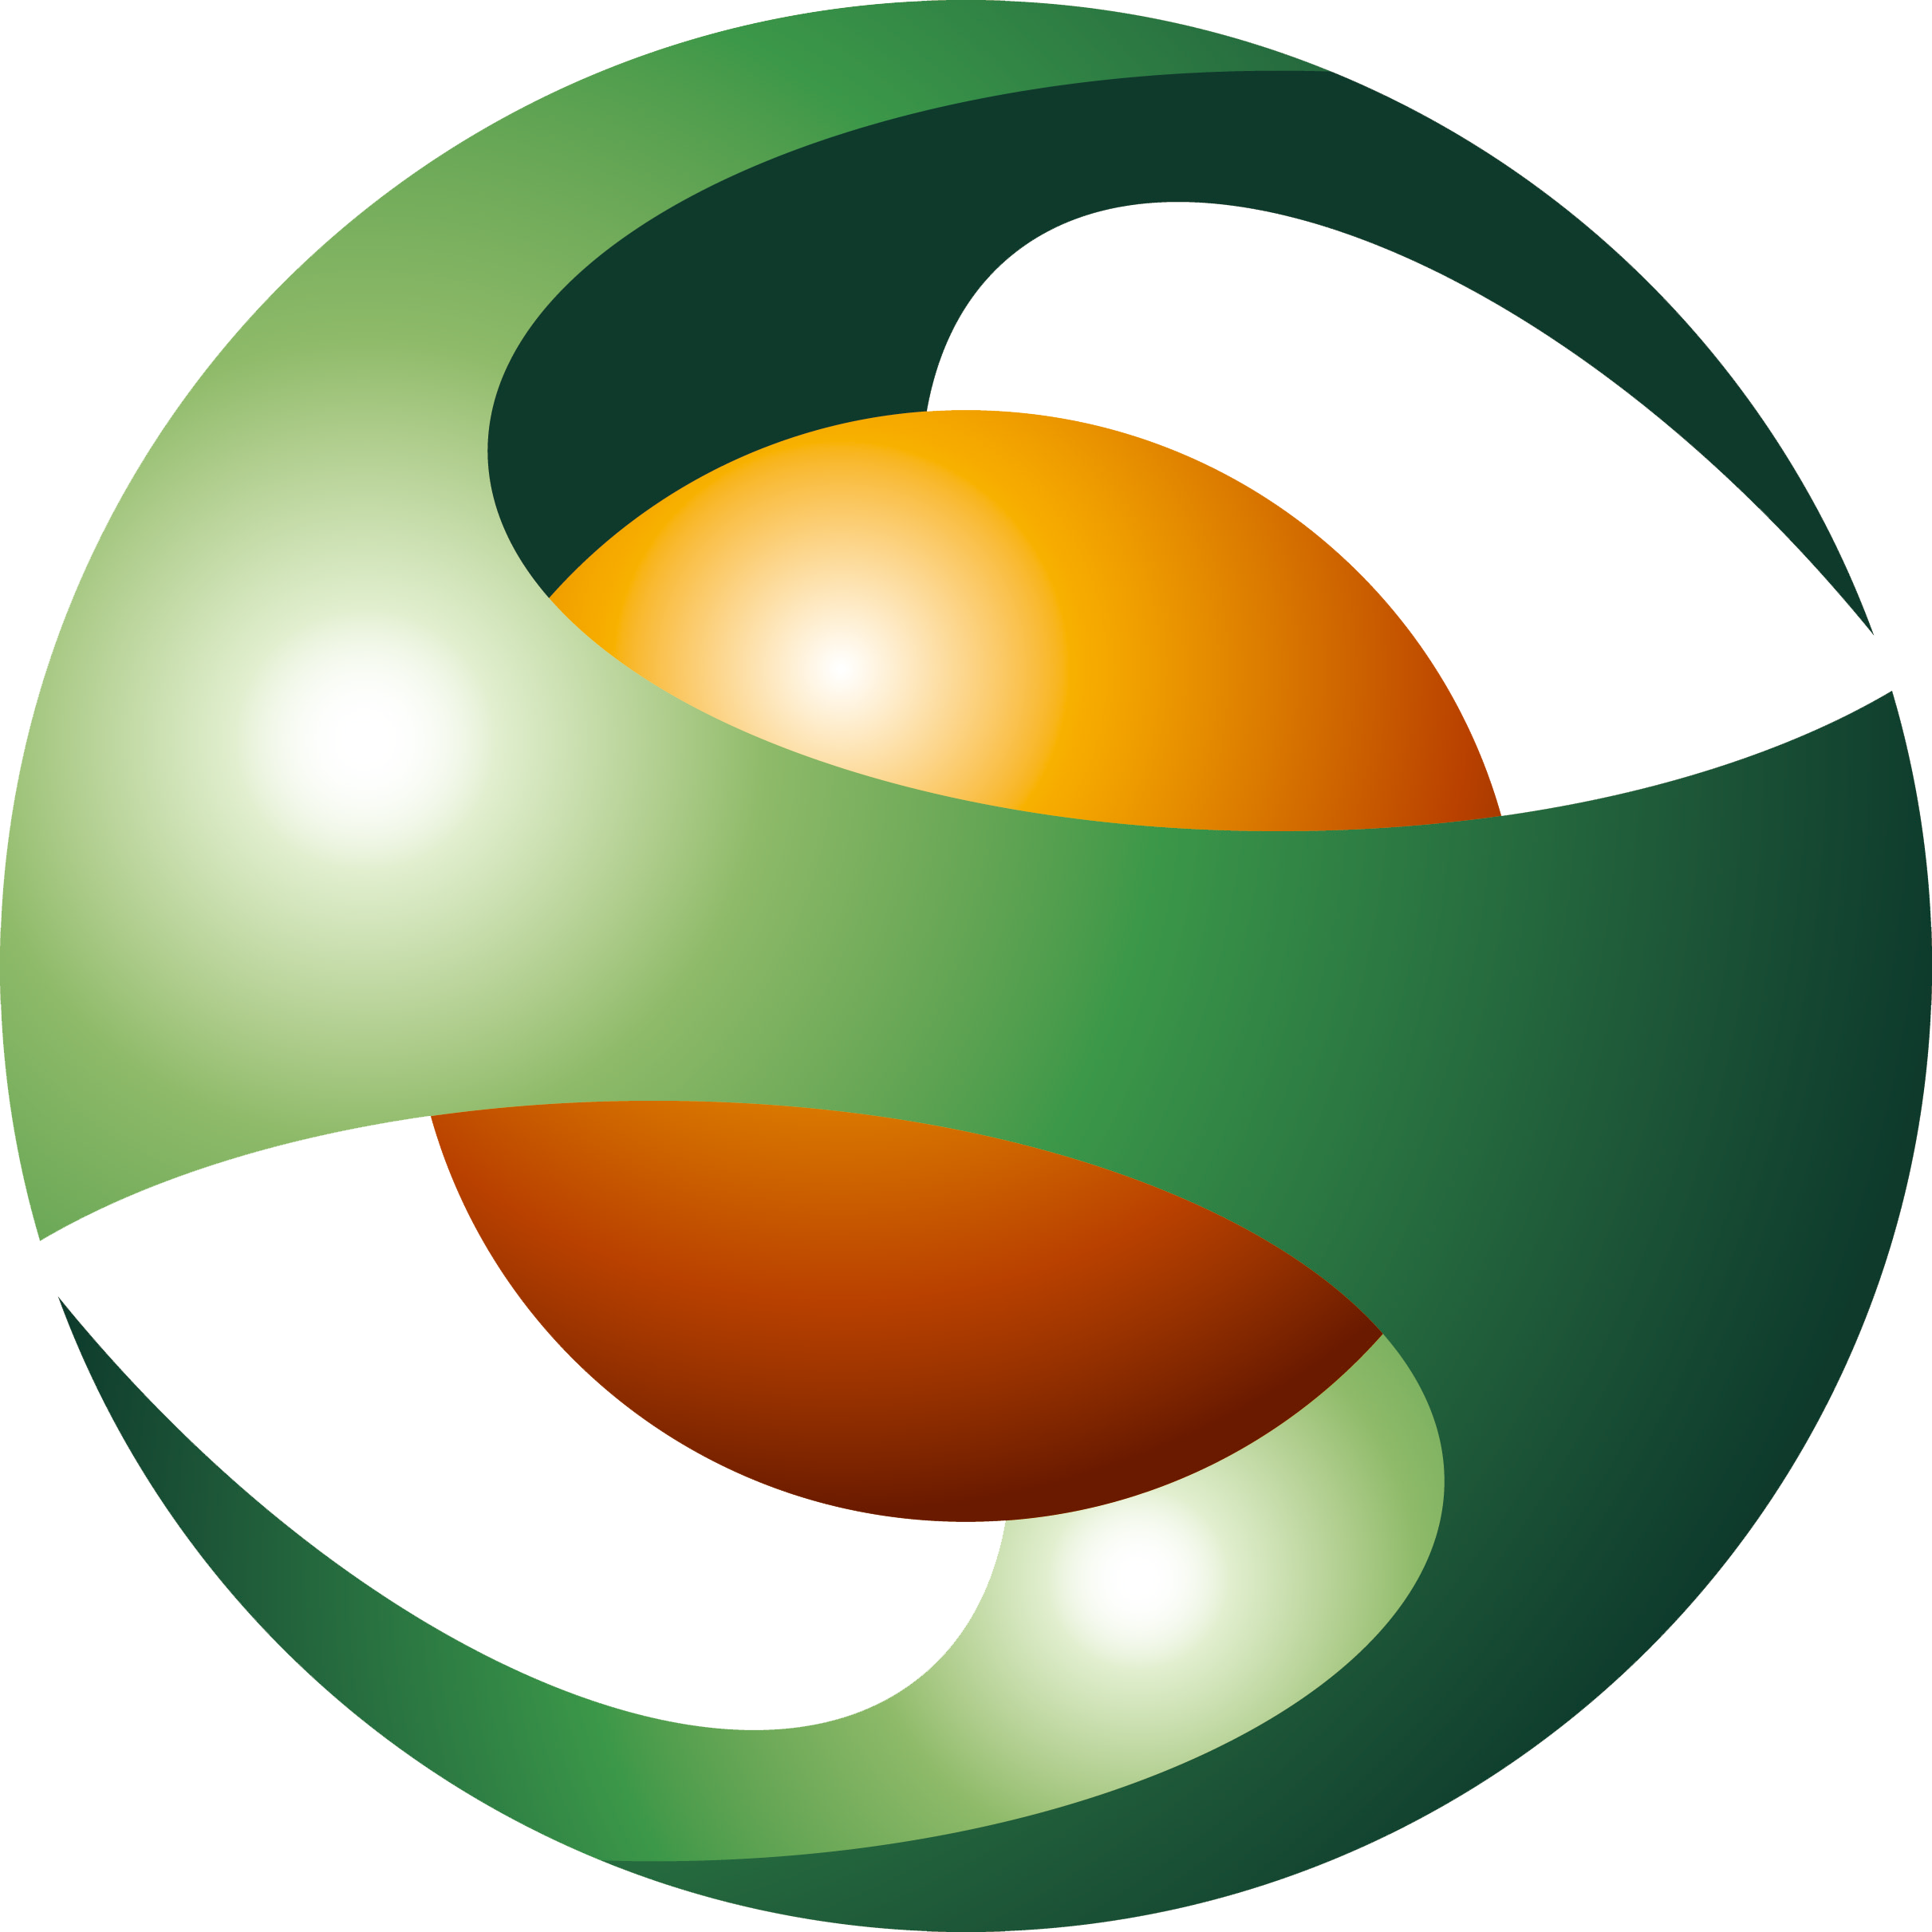 logo-mark